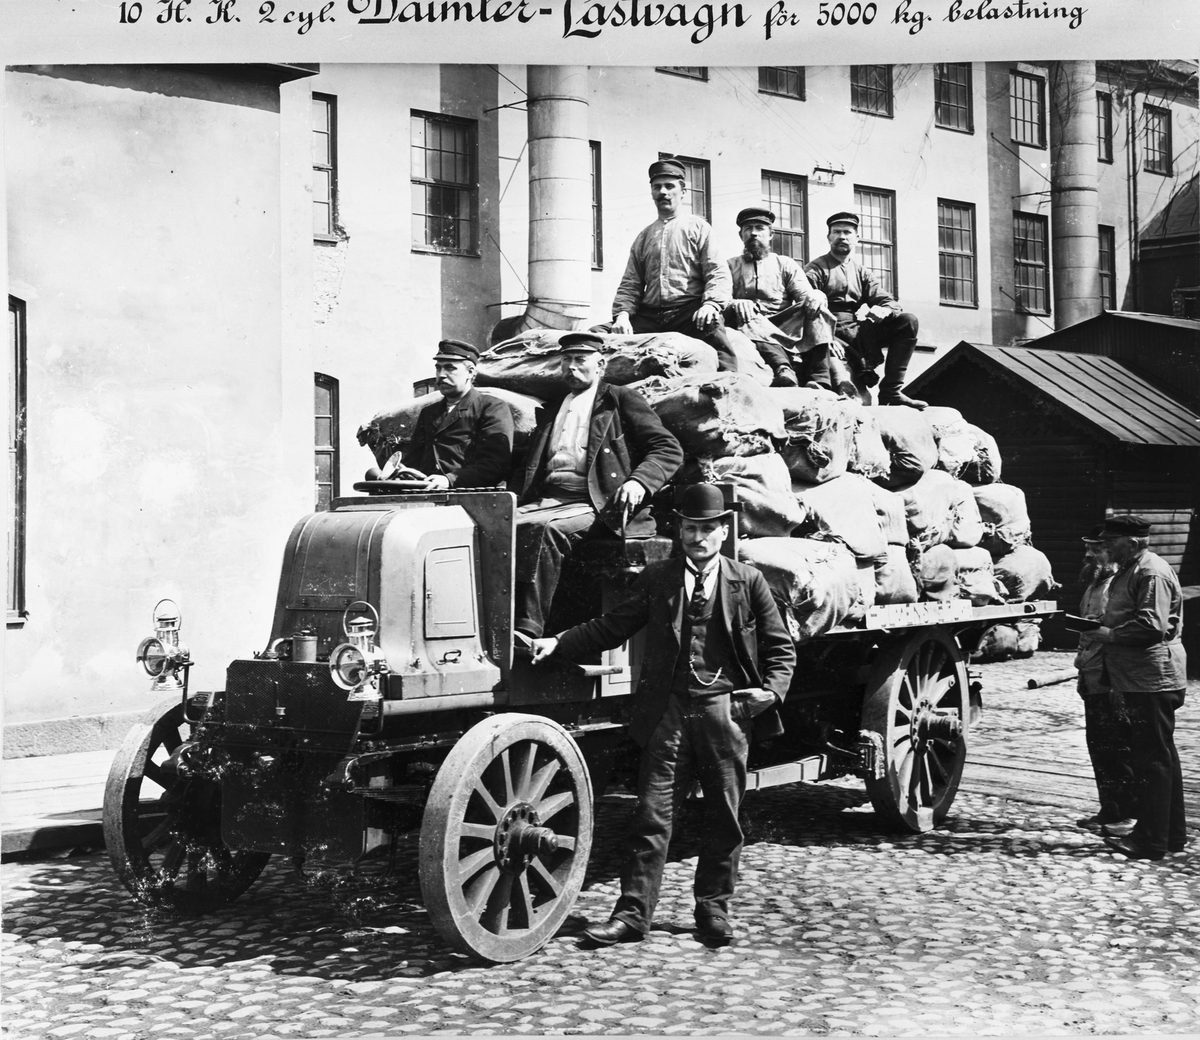 10 hkr 2 cyl Daimler-Lastvagn för 5000 kg belastning levererad till Holmens Bruk, Norrköping år 1903